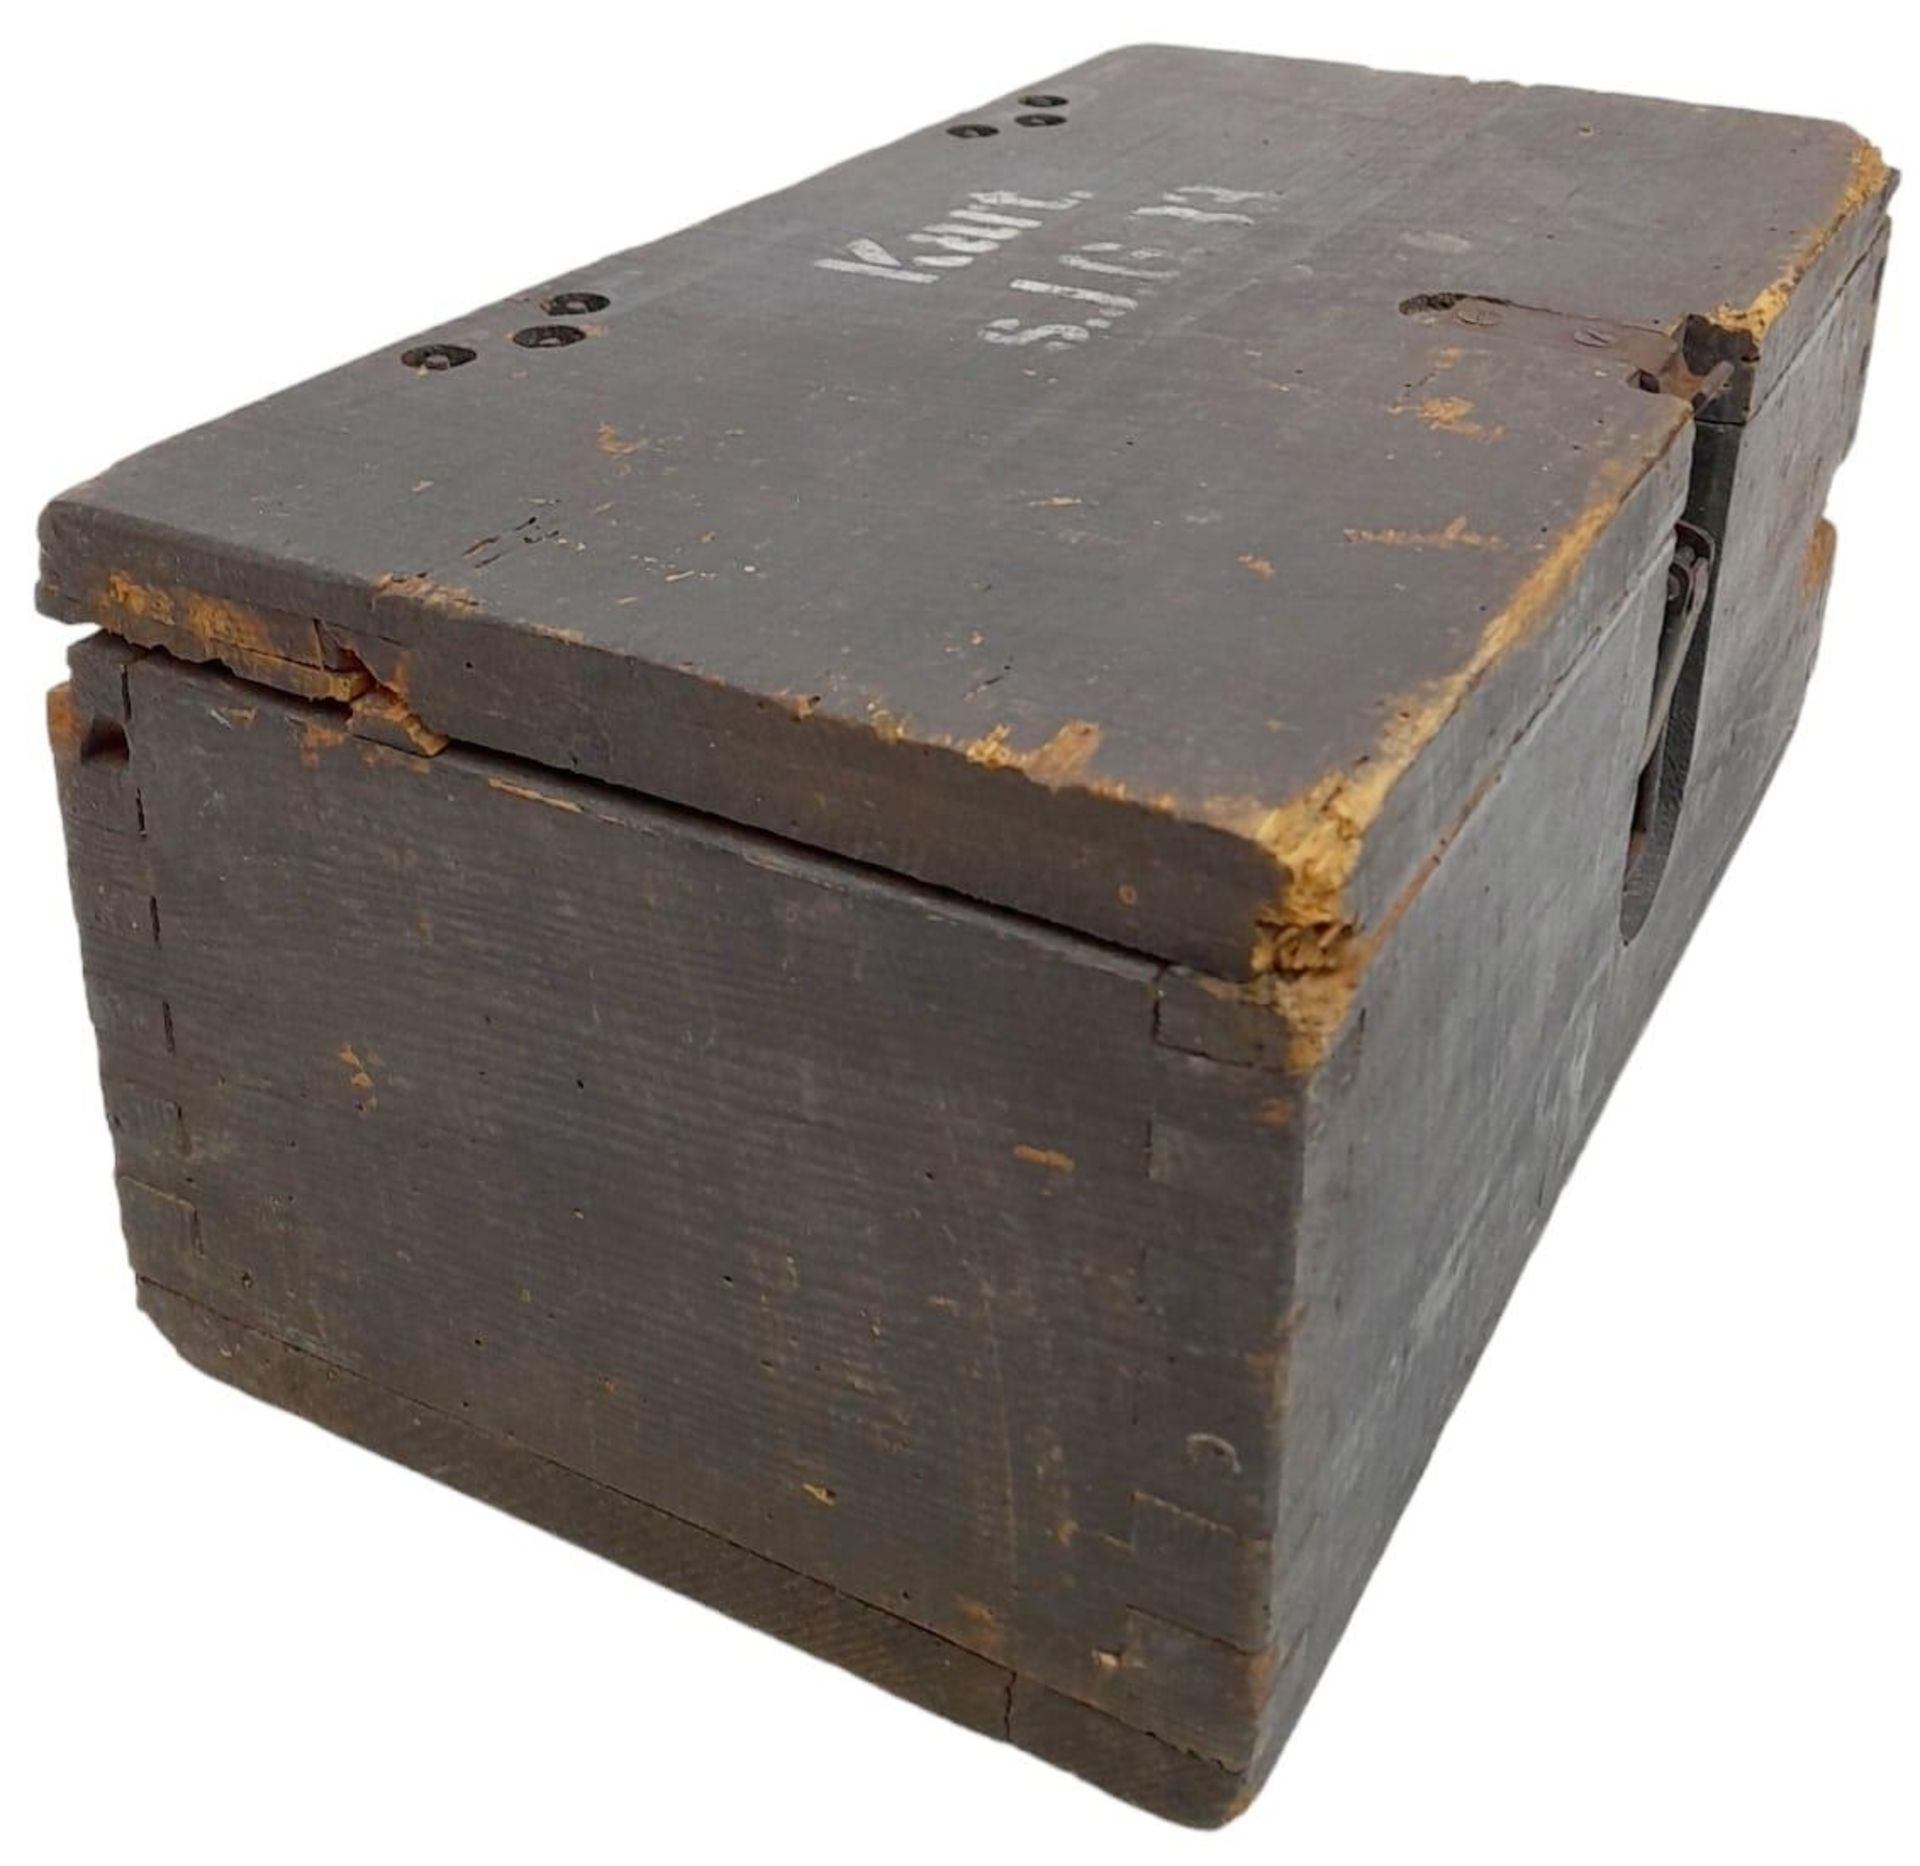 WW2 German 15cm Sig 33 Cartridge Box with original labels, stencils, and internals. - Bild 8 aus 15